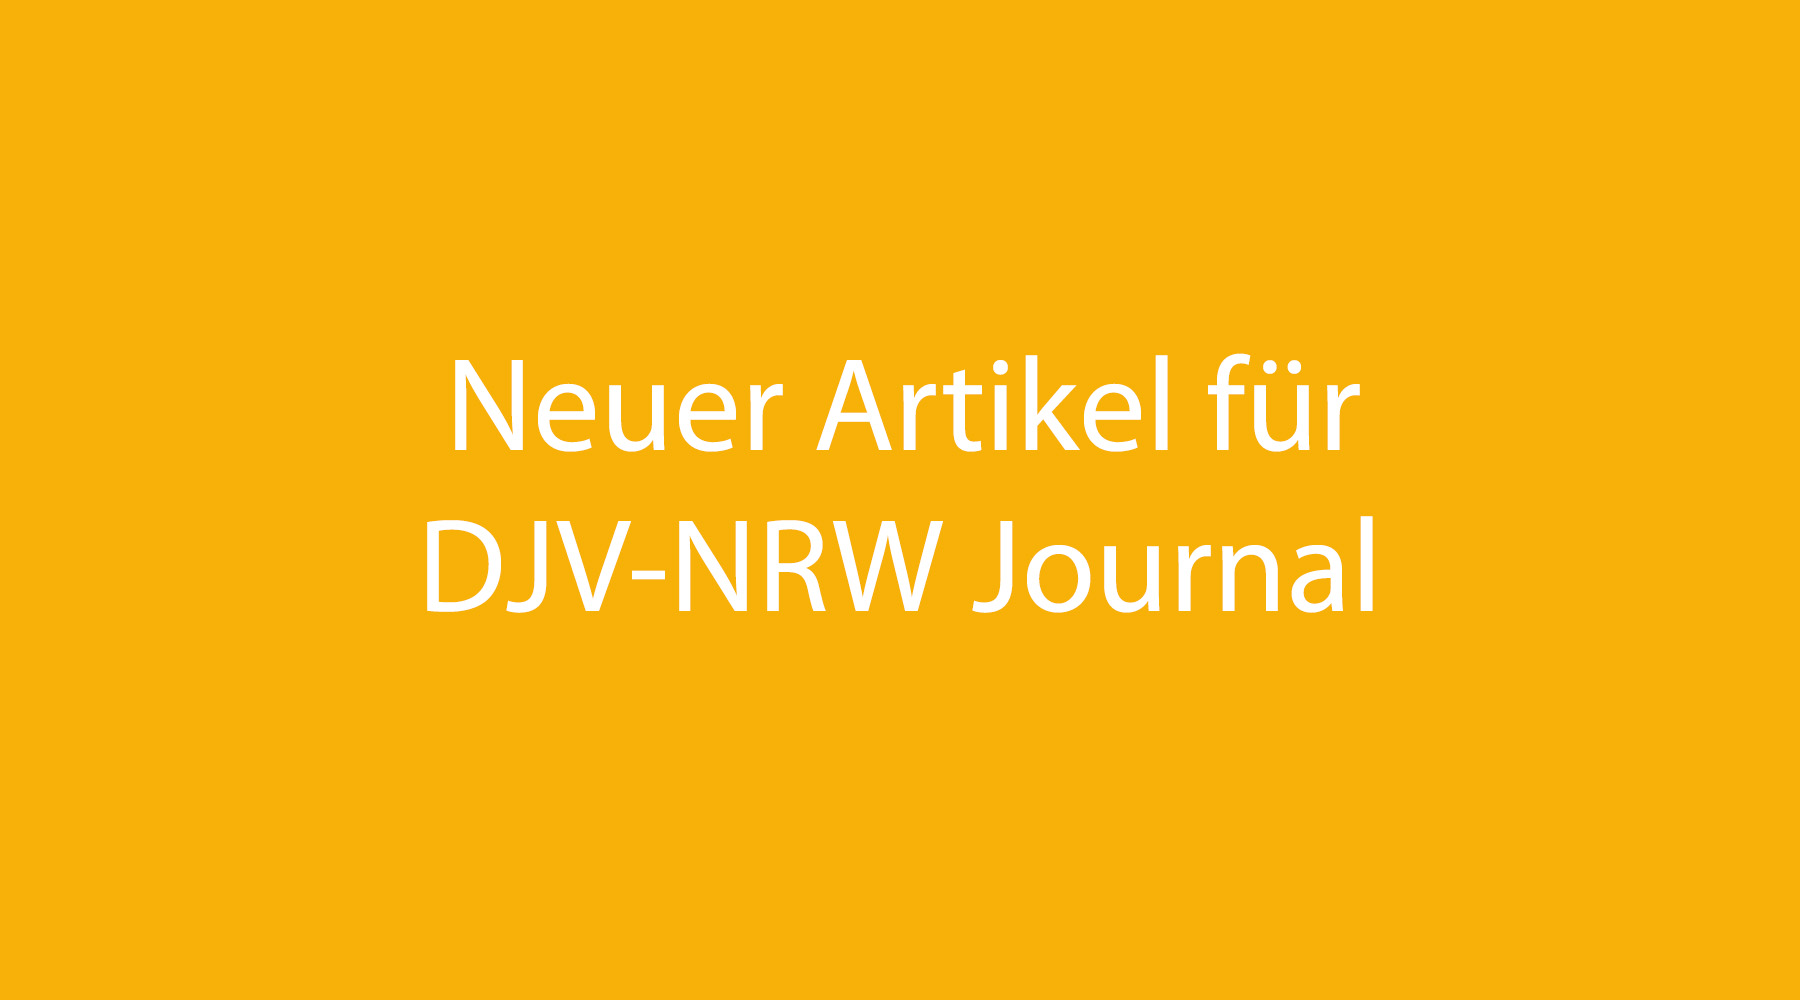 Neuer Artikel fürs DJV-NRW Journal